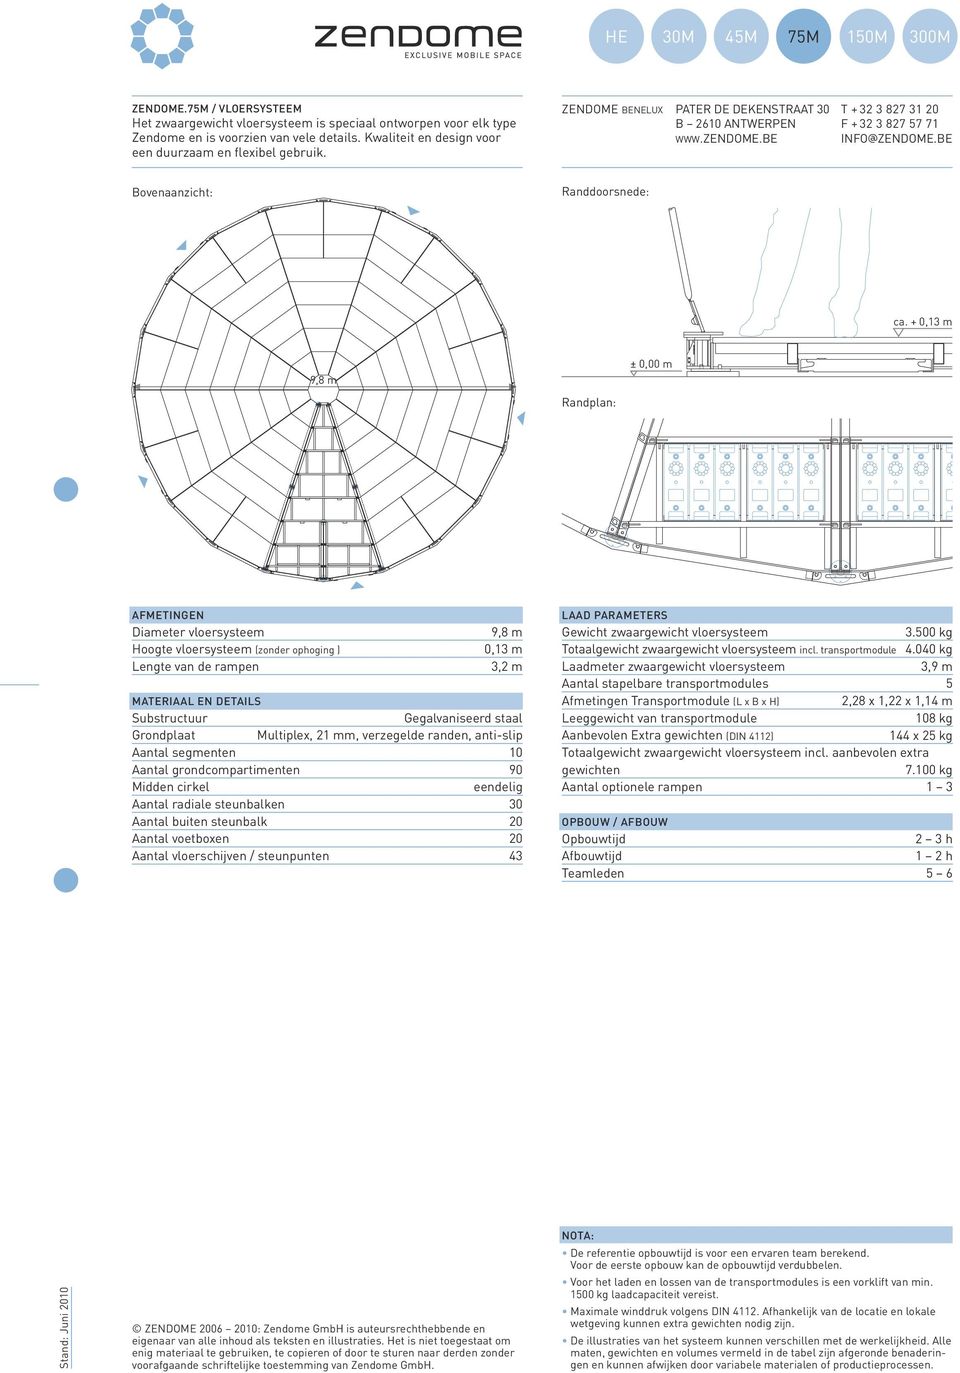 Diameter vloersysteem Hoogte vloersysteem (zonder ophoging ) Lengte van de rampen 9,8 m 0,13 m 3,2 m Materiaal en details Substructuur Gegalvaniseerd staal Grondplaat Multiplex, 21 mm, verzegelde